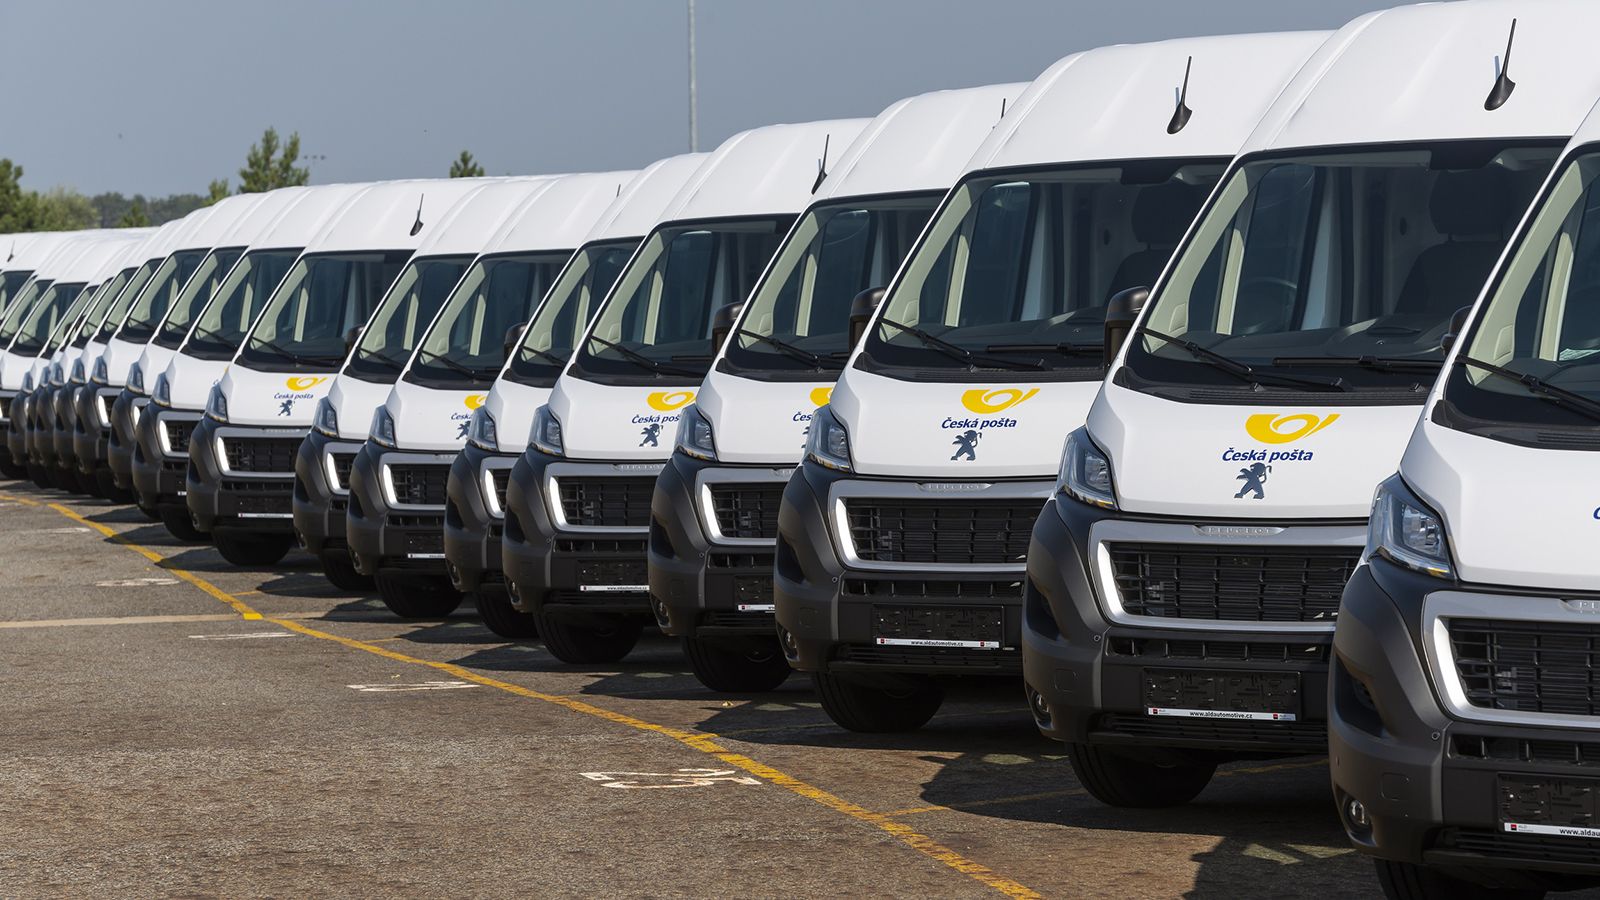 Με πάνω από 4.000 Peugeot στον στόλο τους, τα τσέχικα ταχυδρομεία αποτελούν τον μεγαλύτερο πελάτη της φίρμας στην κεντρική και ανατολική Ευρώπη.